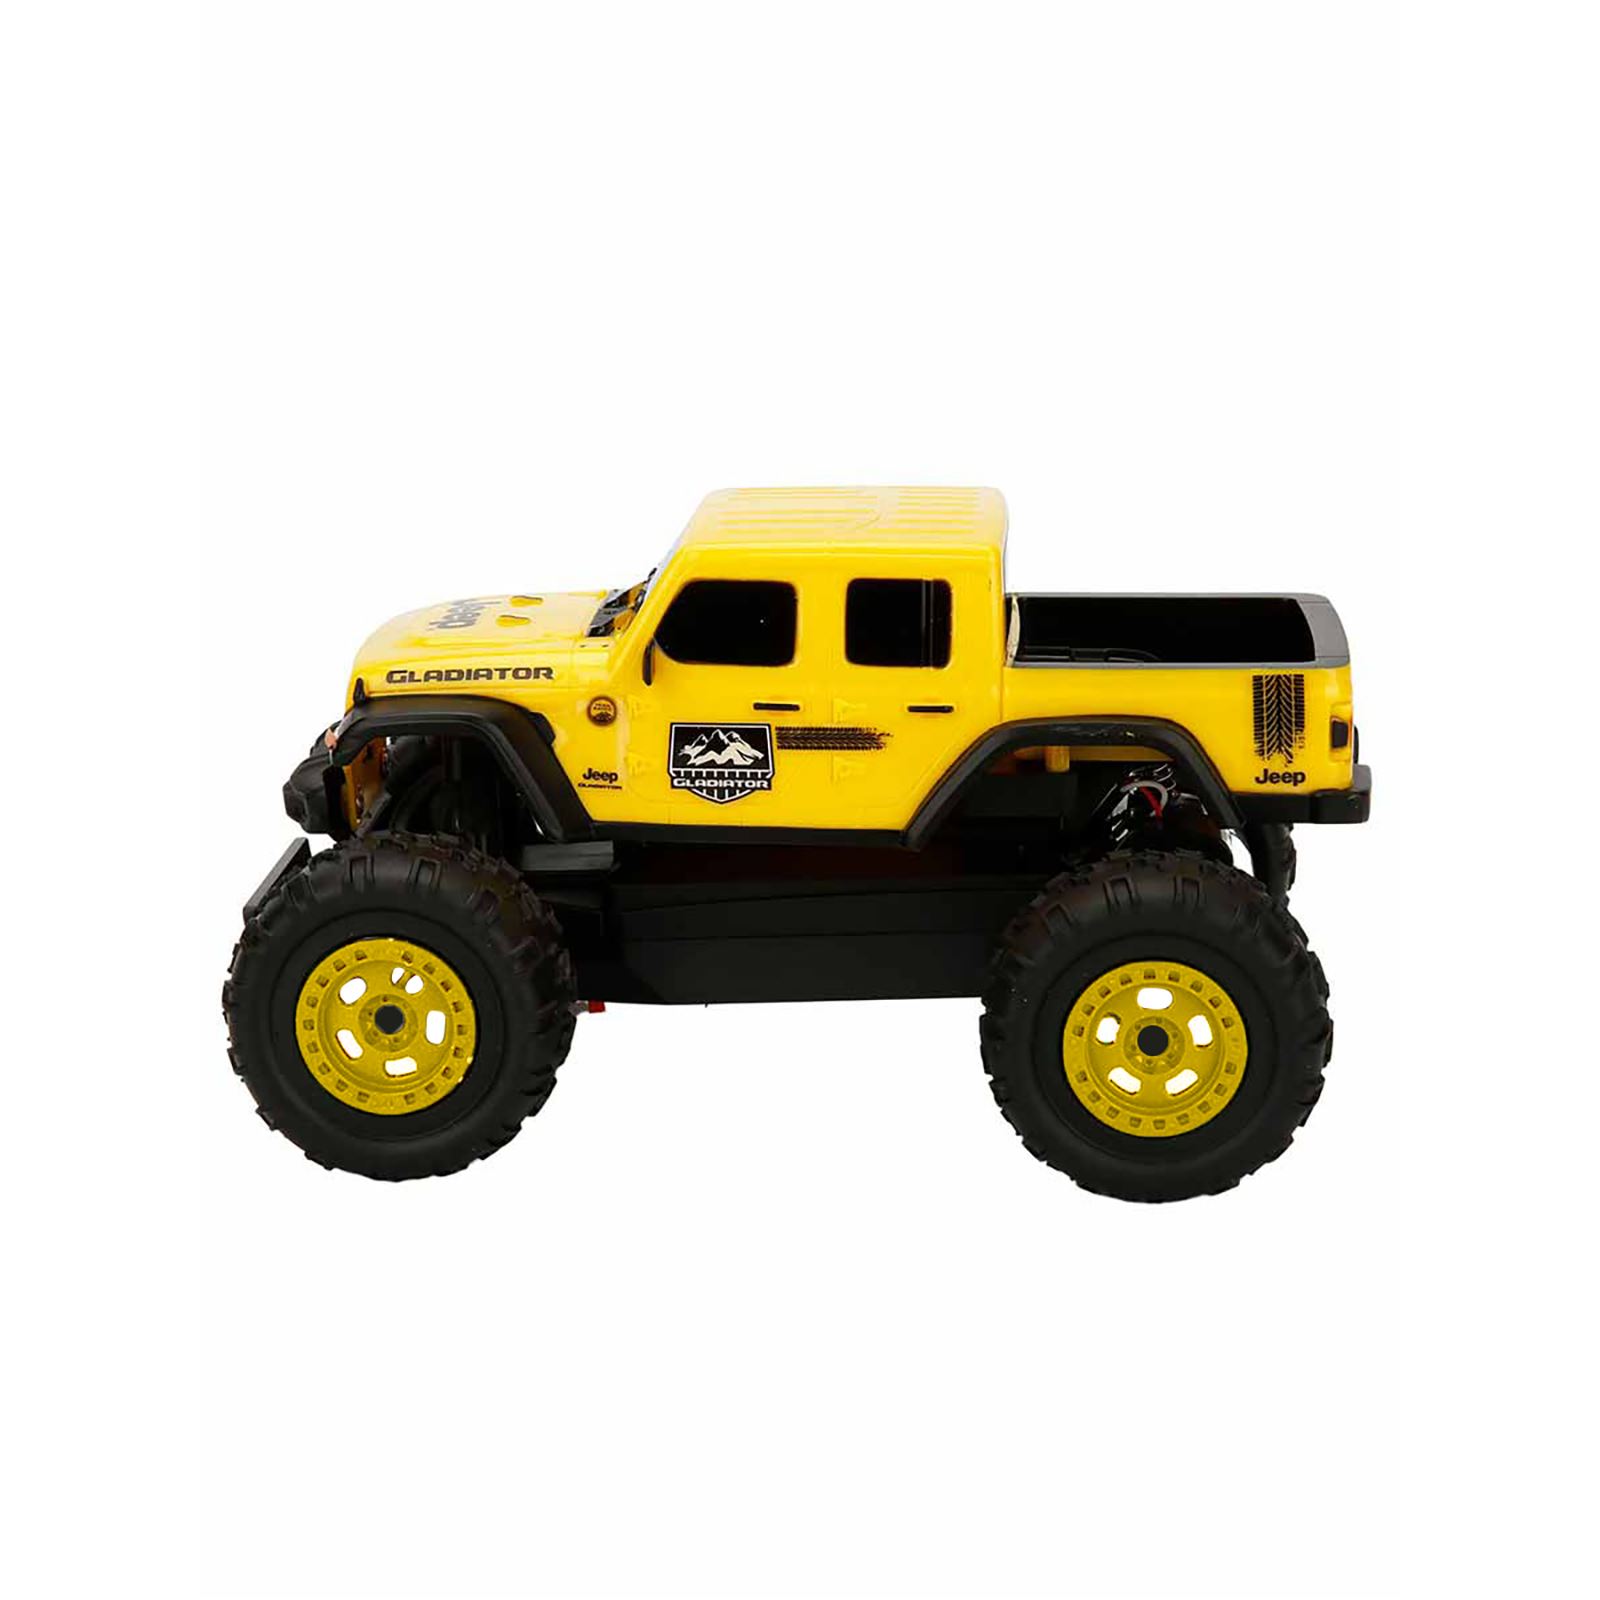 Taiyo 1:22 Taiyo Jeep Uzaktan Kumandalı Araba Sarı